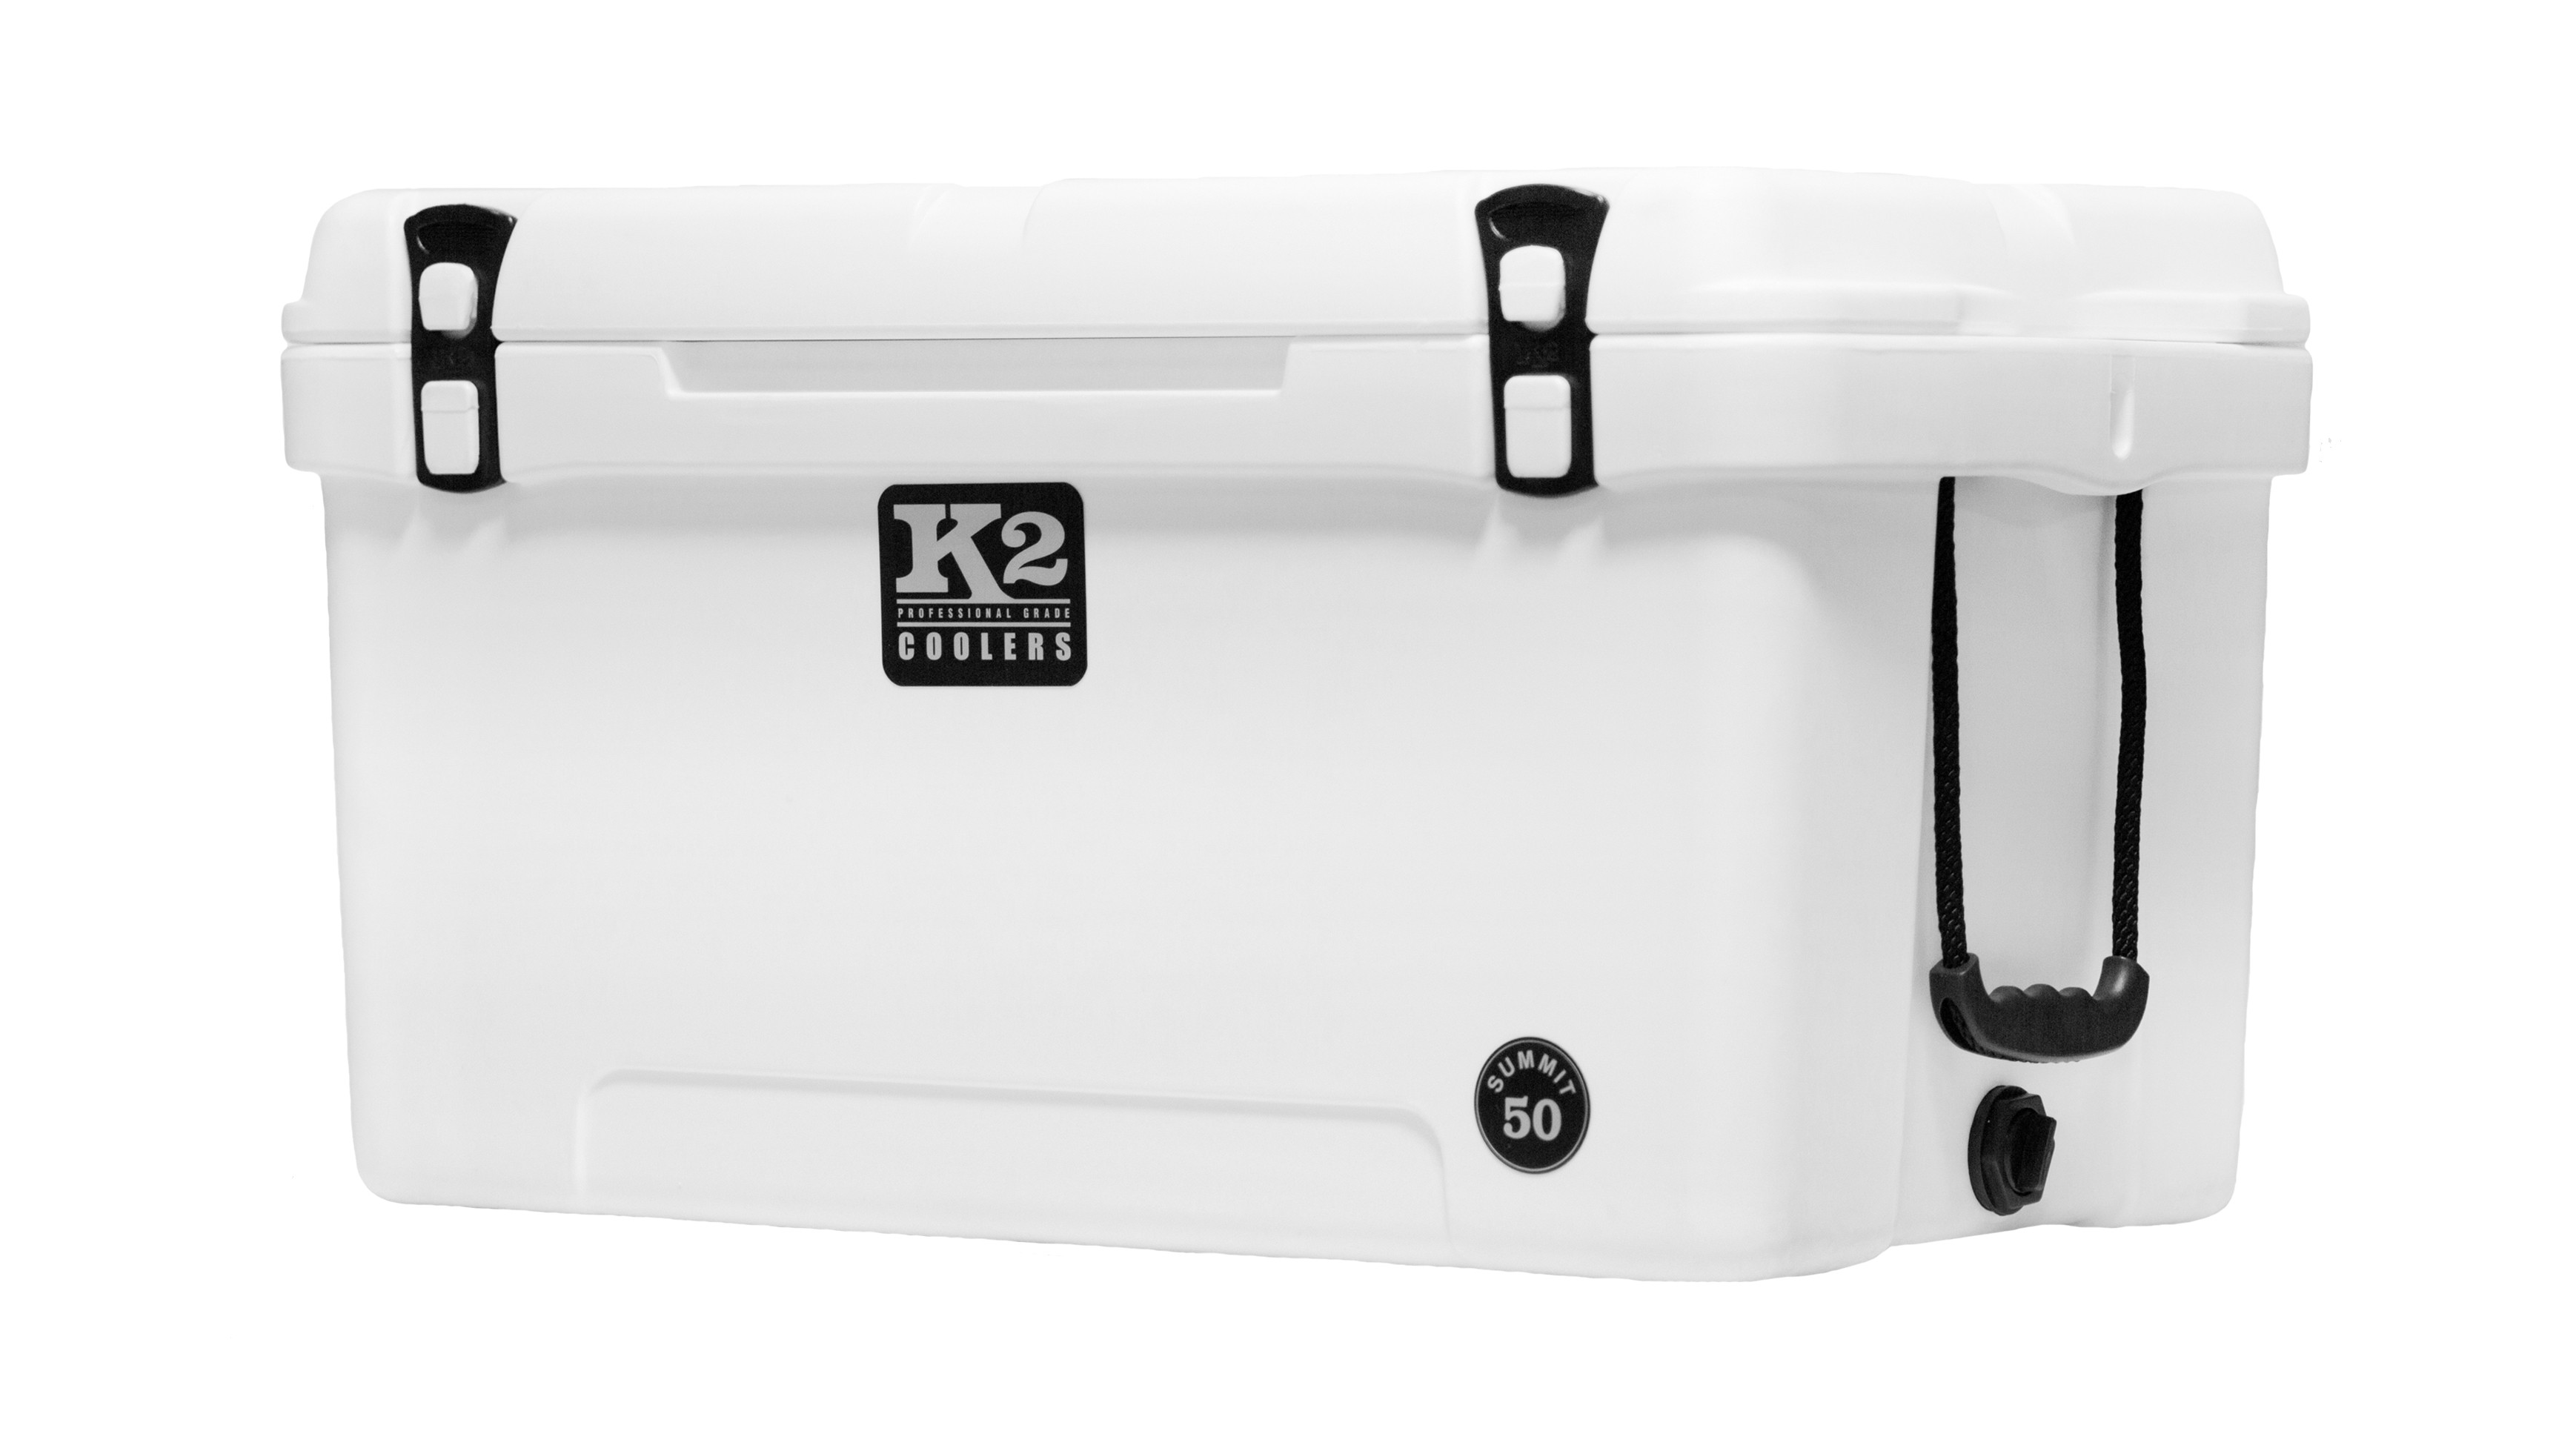 K2 Coolers Water Jug